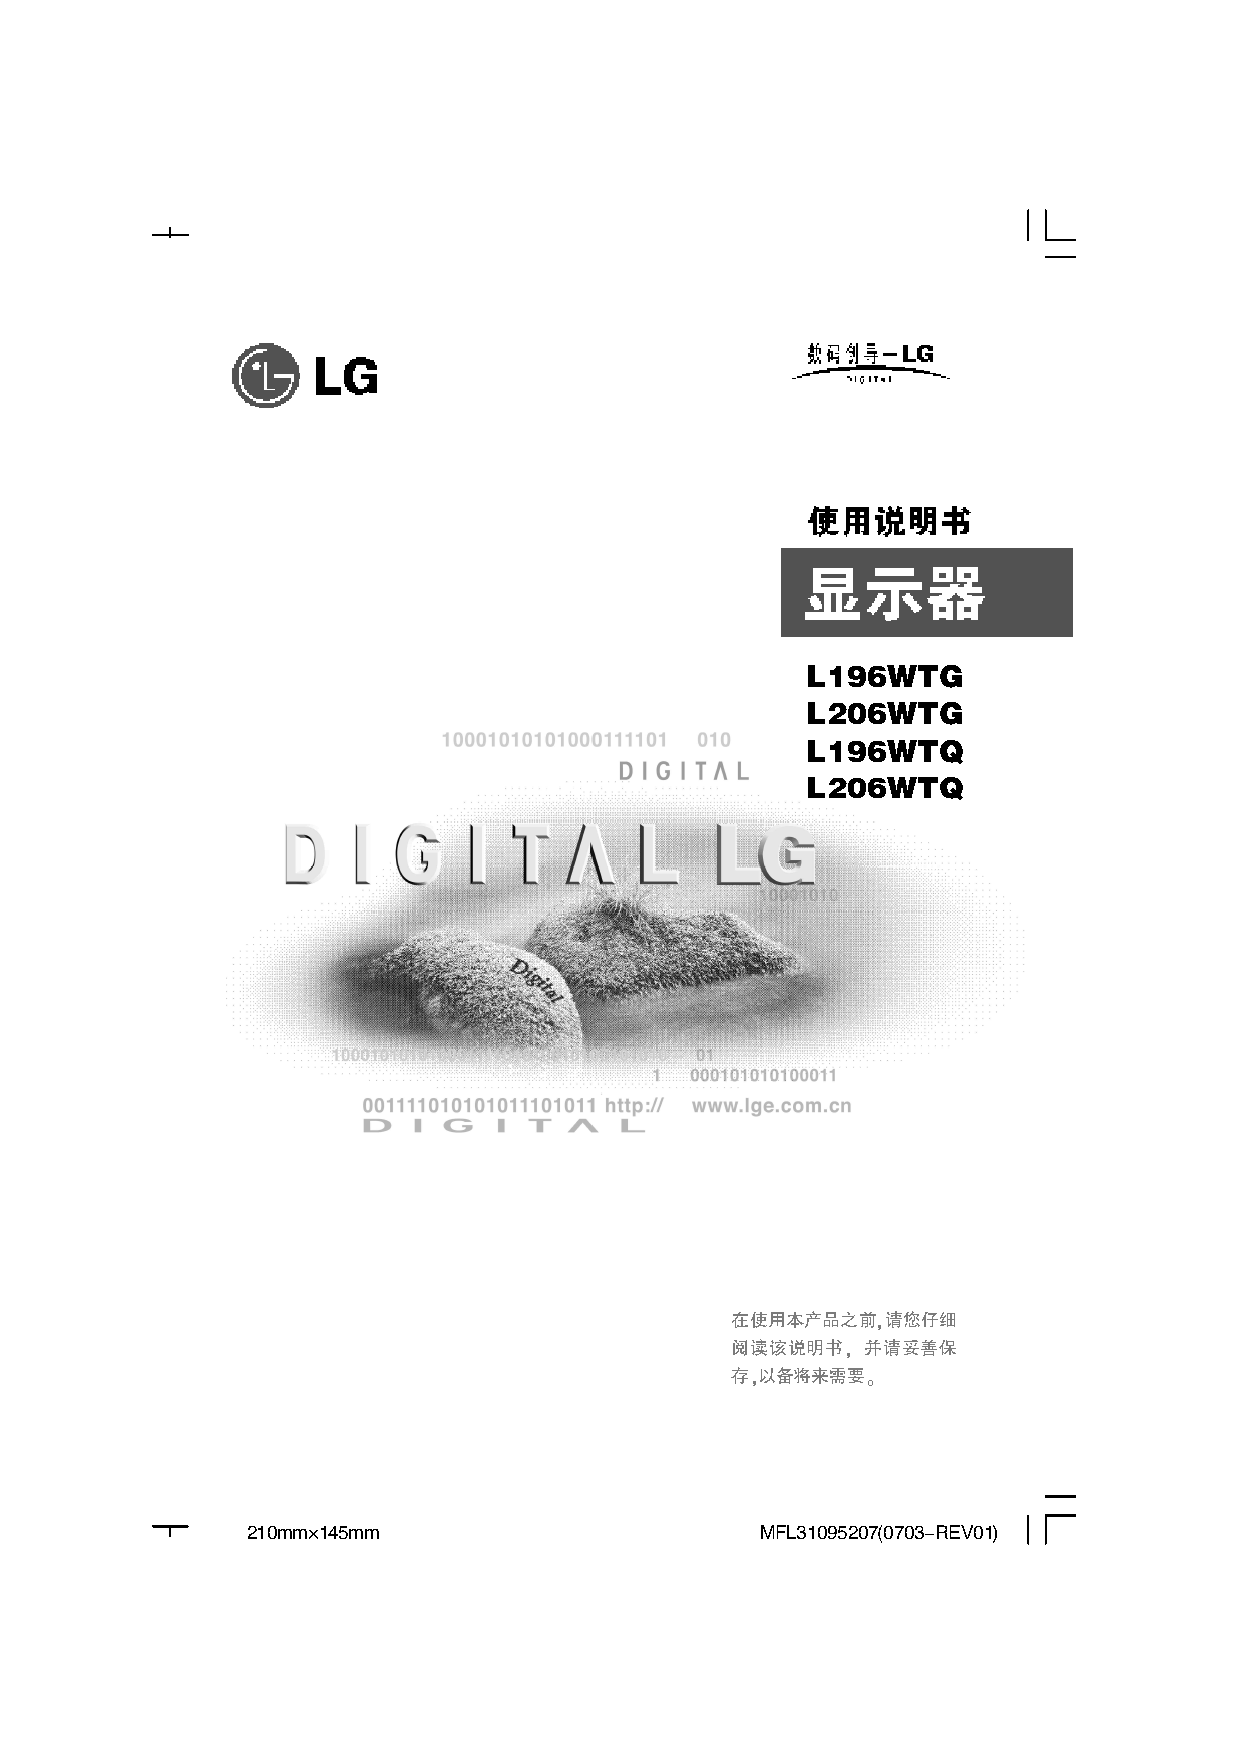 LG L196WTG, L206WTQ 使用说明书 封面